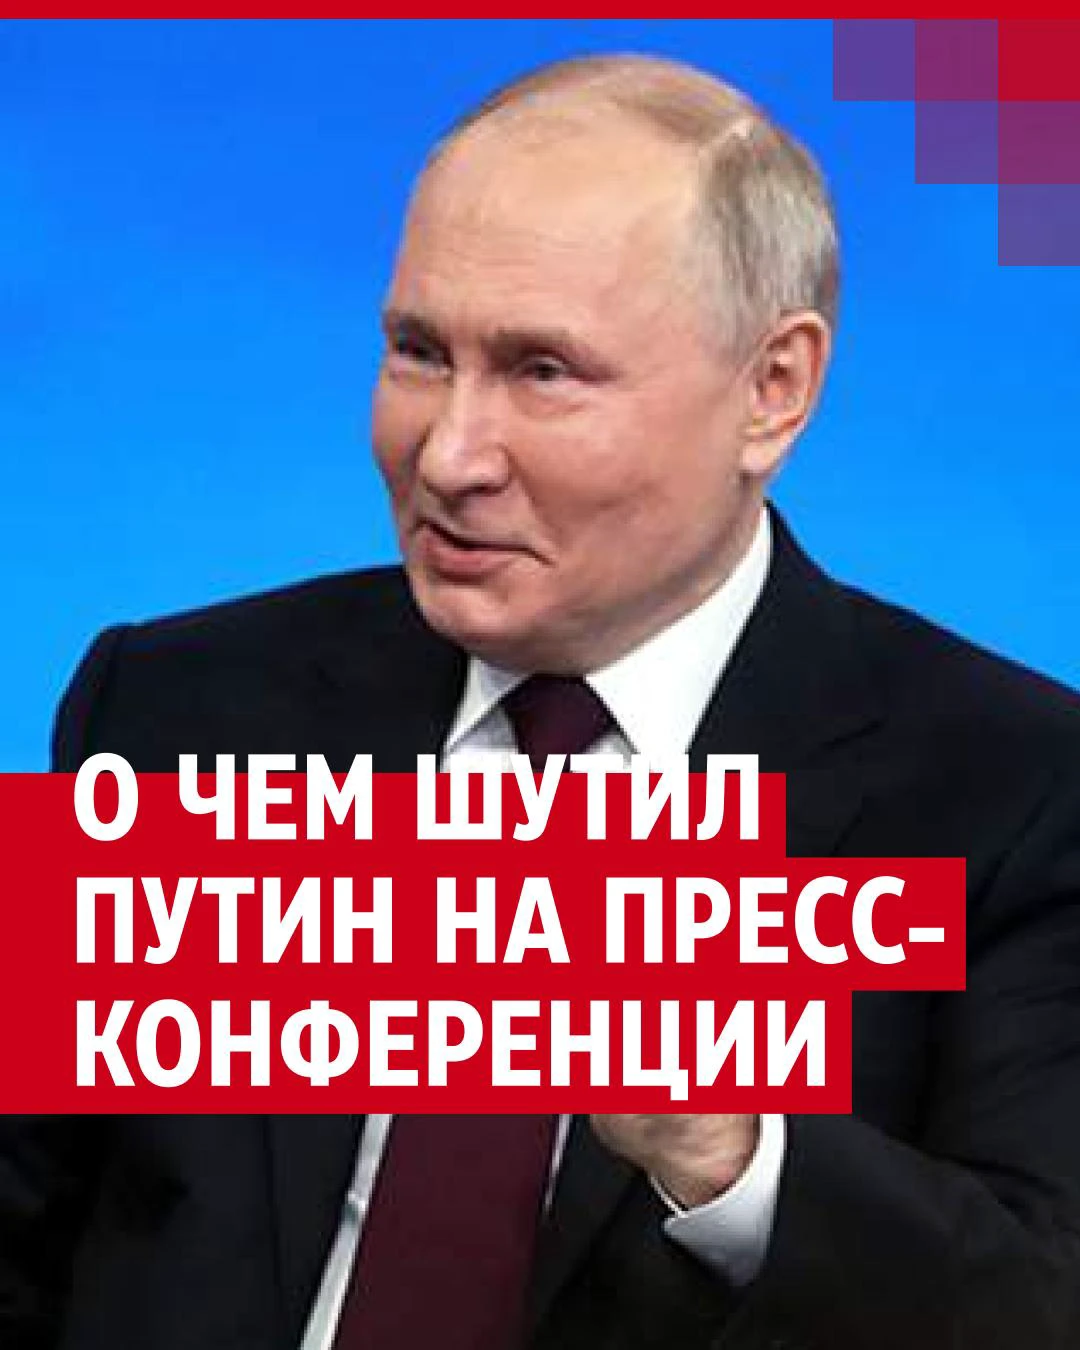 Путин – RT: любители говорят, что групповой секс лучше, здесь сачкануть можно